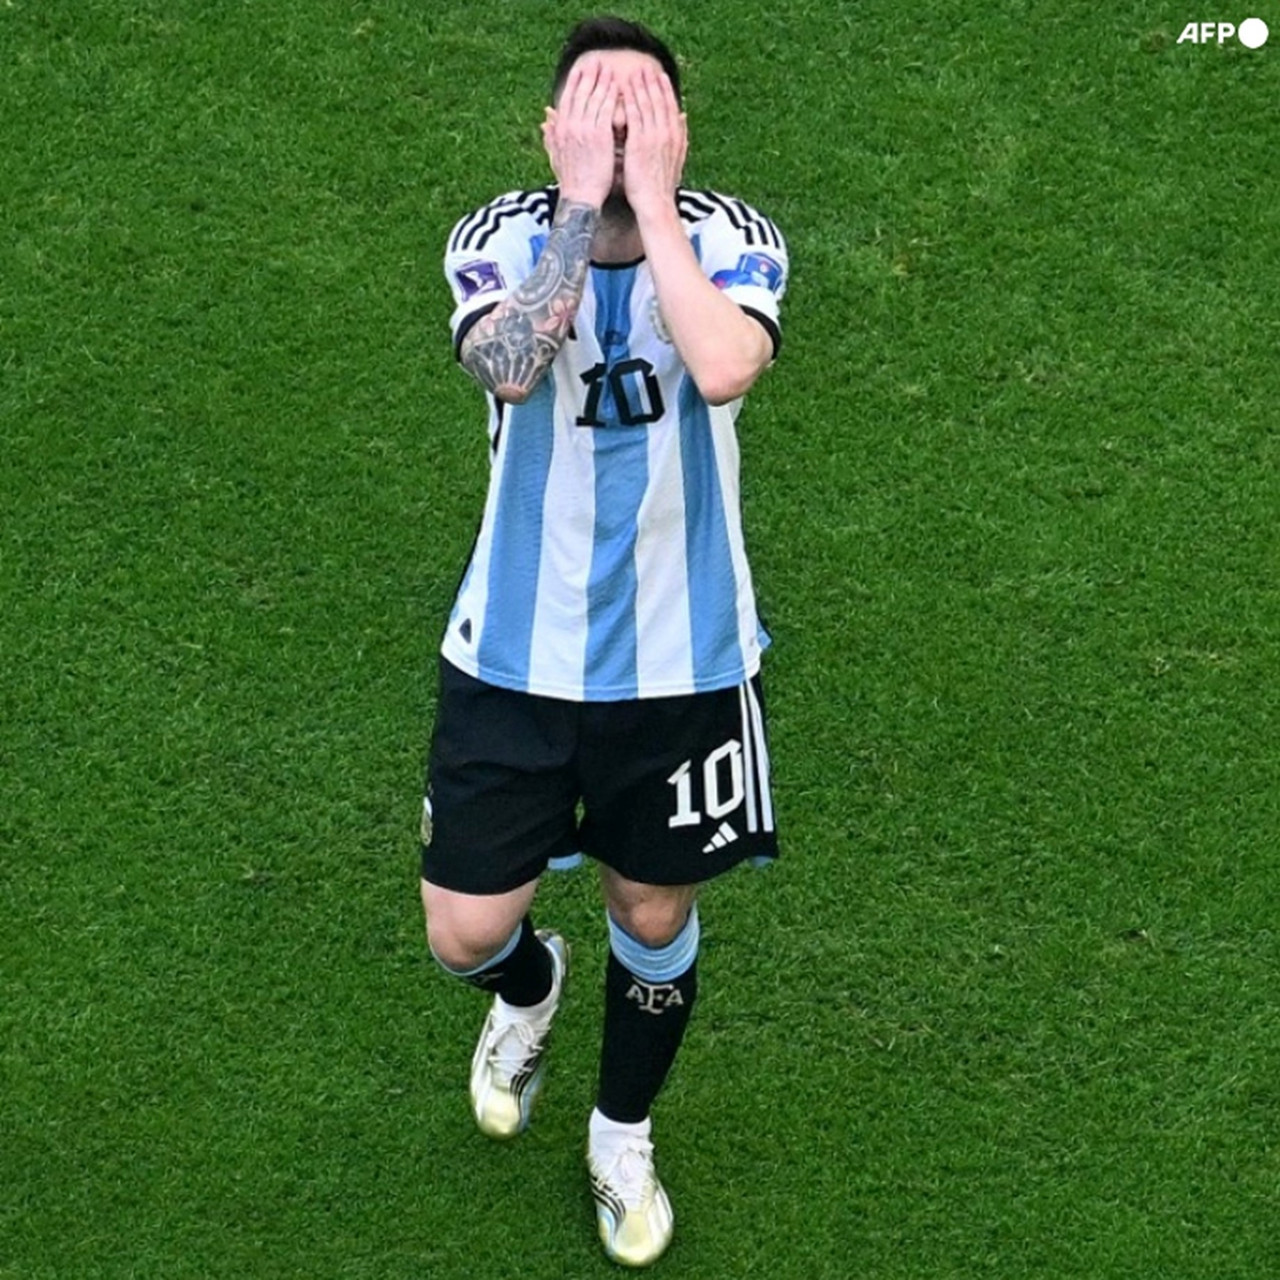 Argentina tropieza en el primero de 7 pasos para lograr el sueño